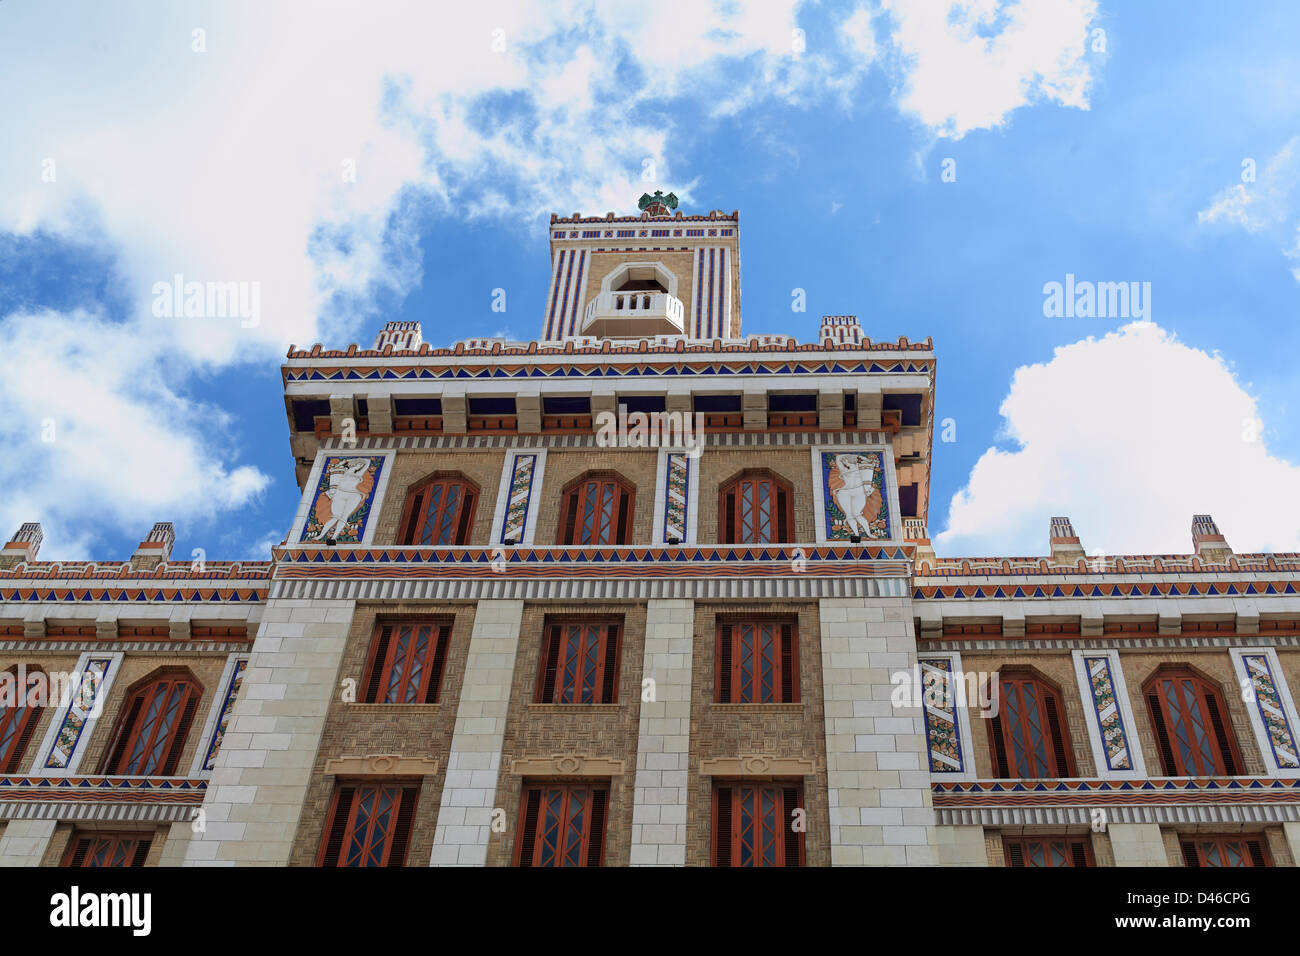 El viejo edificio de Ron Bacardi Art Deco en La Habana, Cuba, ahora se utilizan como oficinas de gobierno Foto de stock